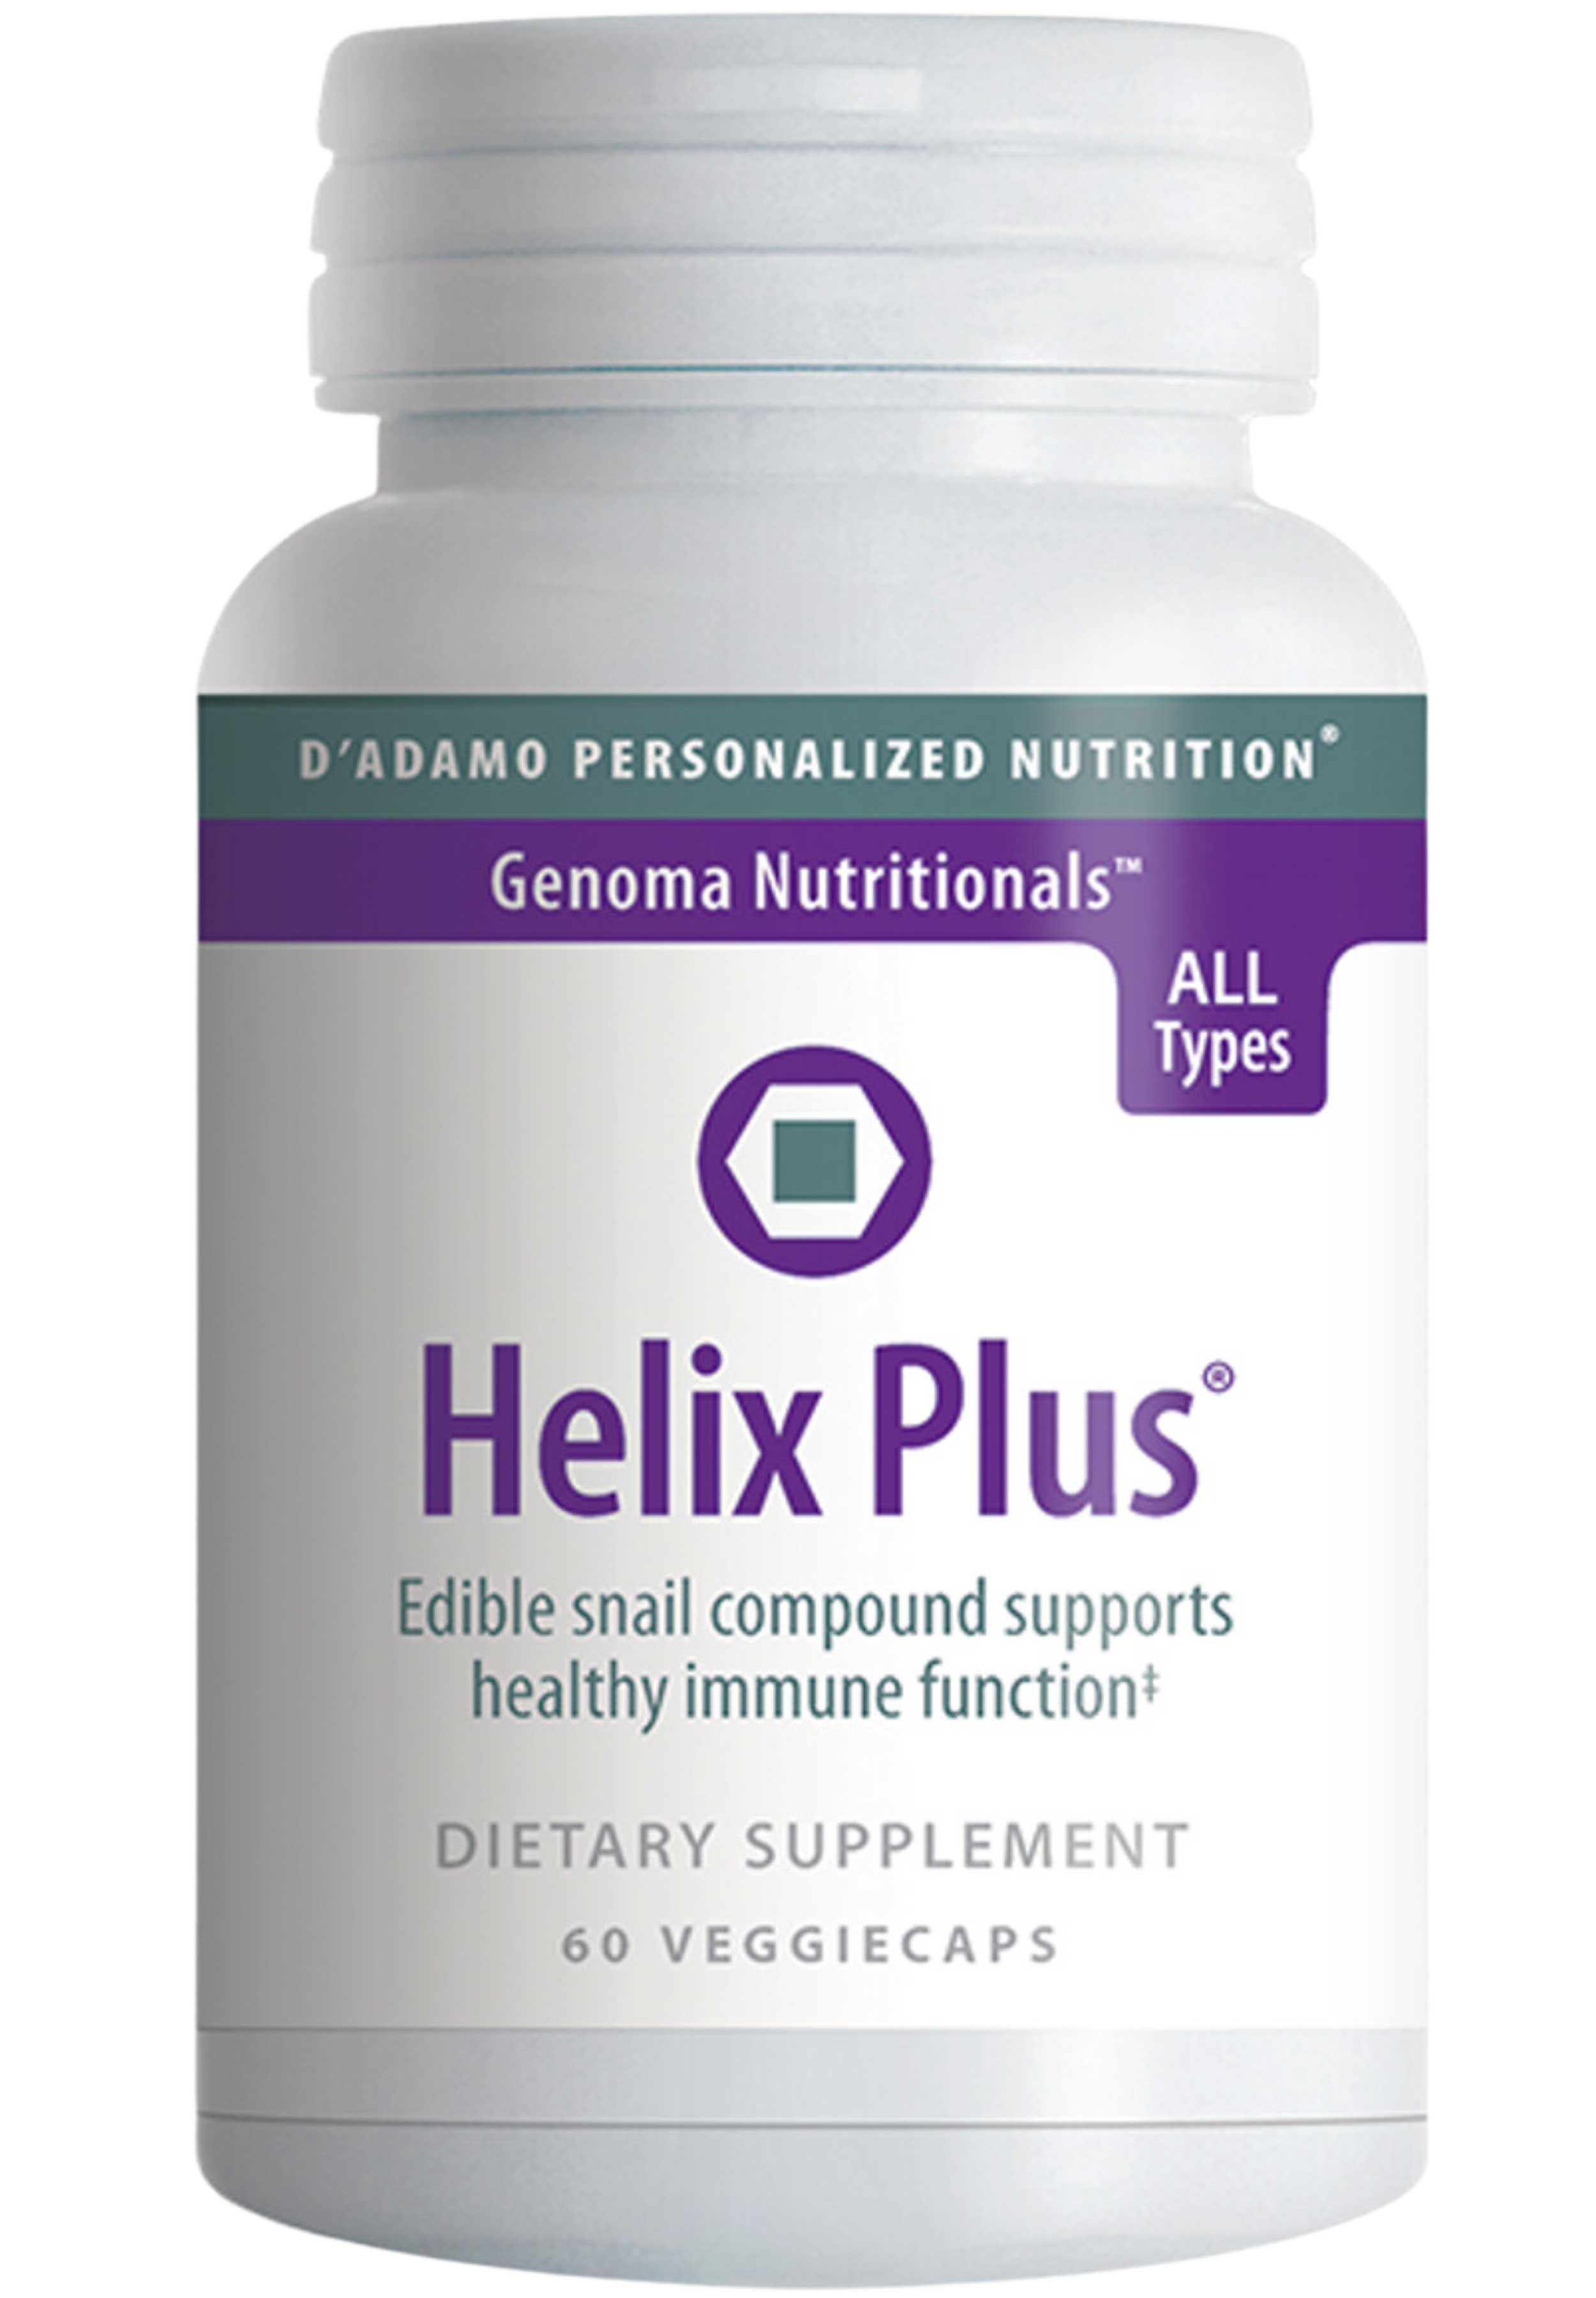 D'Adamo Personalized Nutrition Helix Plus